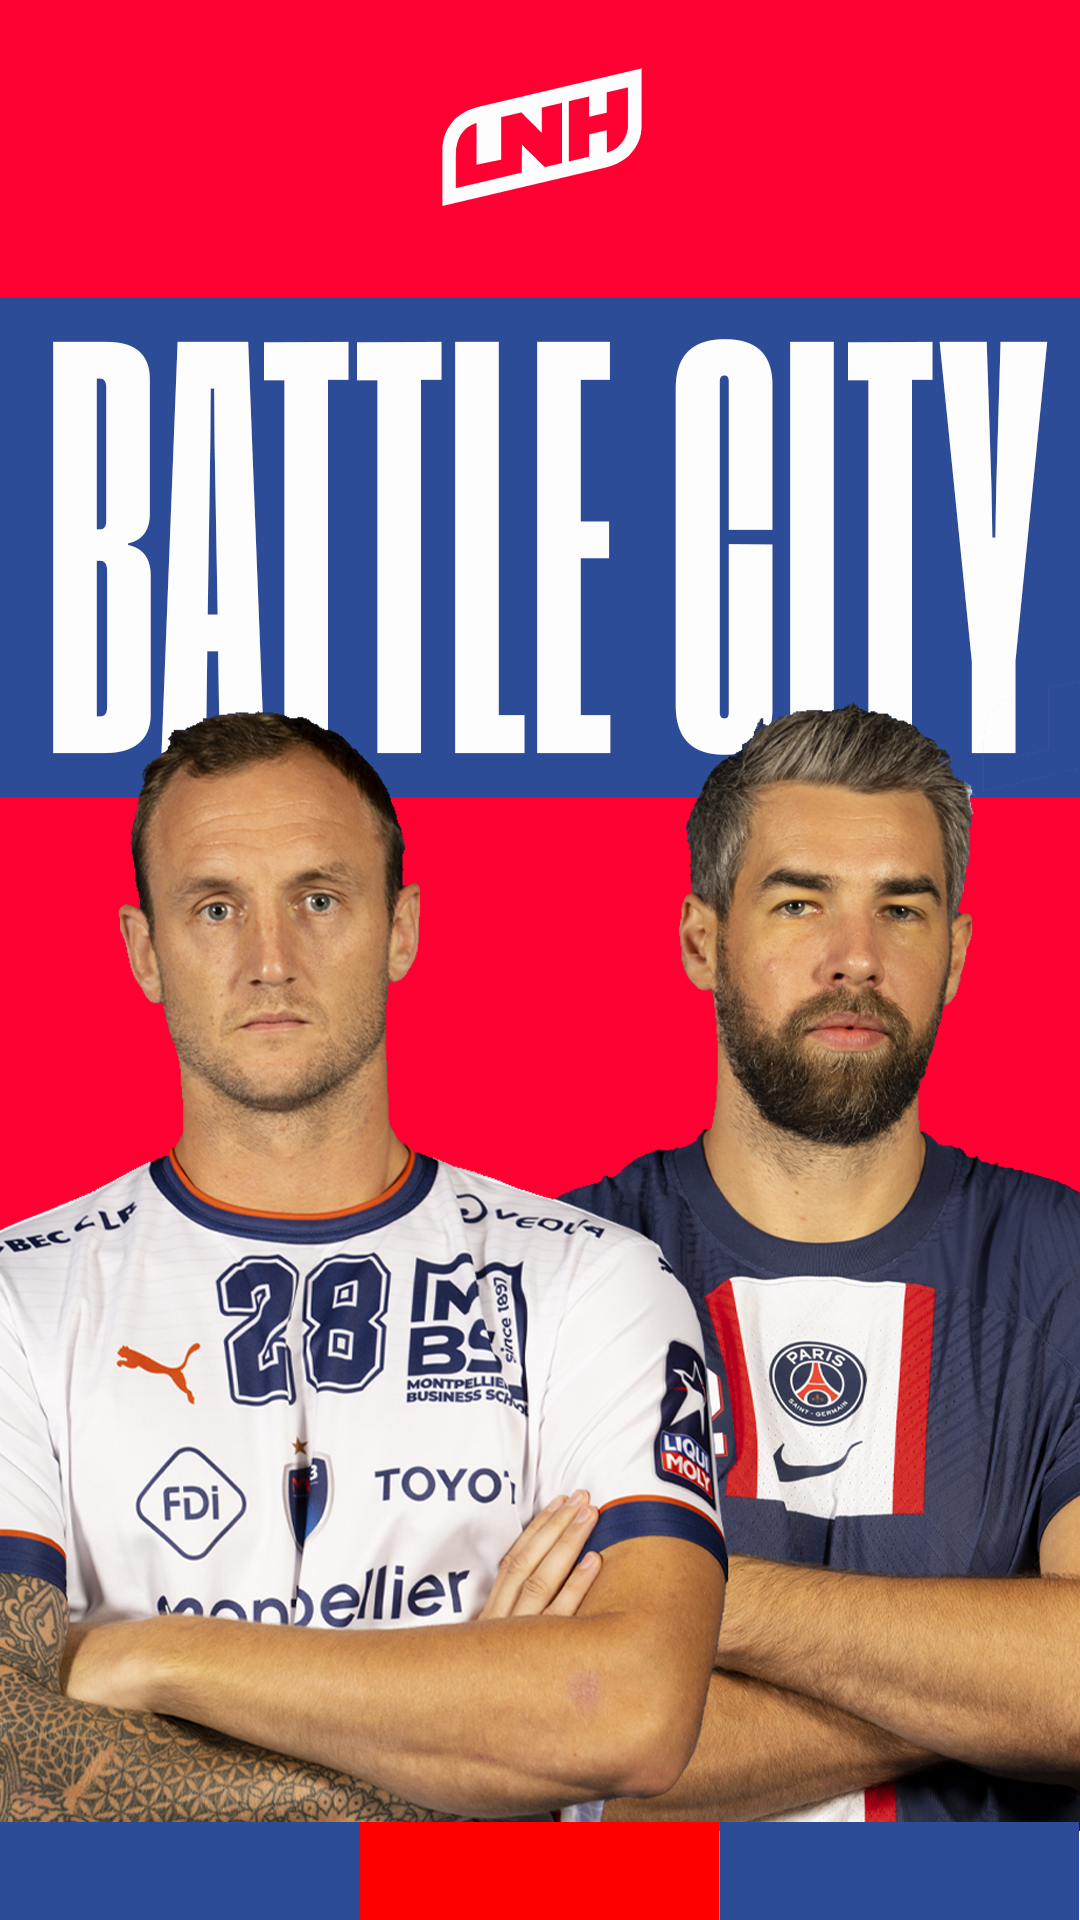 PARIS vs MONTPELLIER | Le #BattleCity de Luka KARABATIC et Valentin PORTE